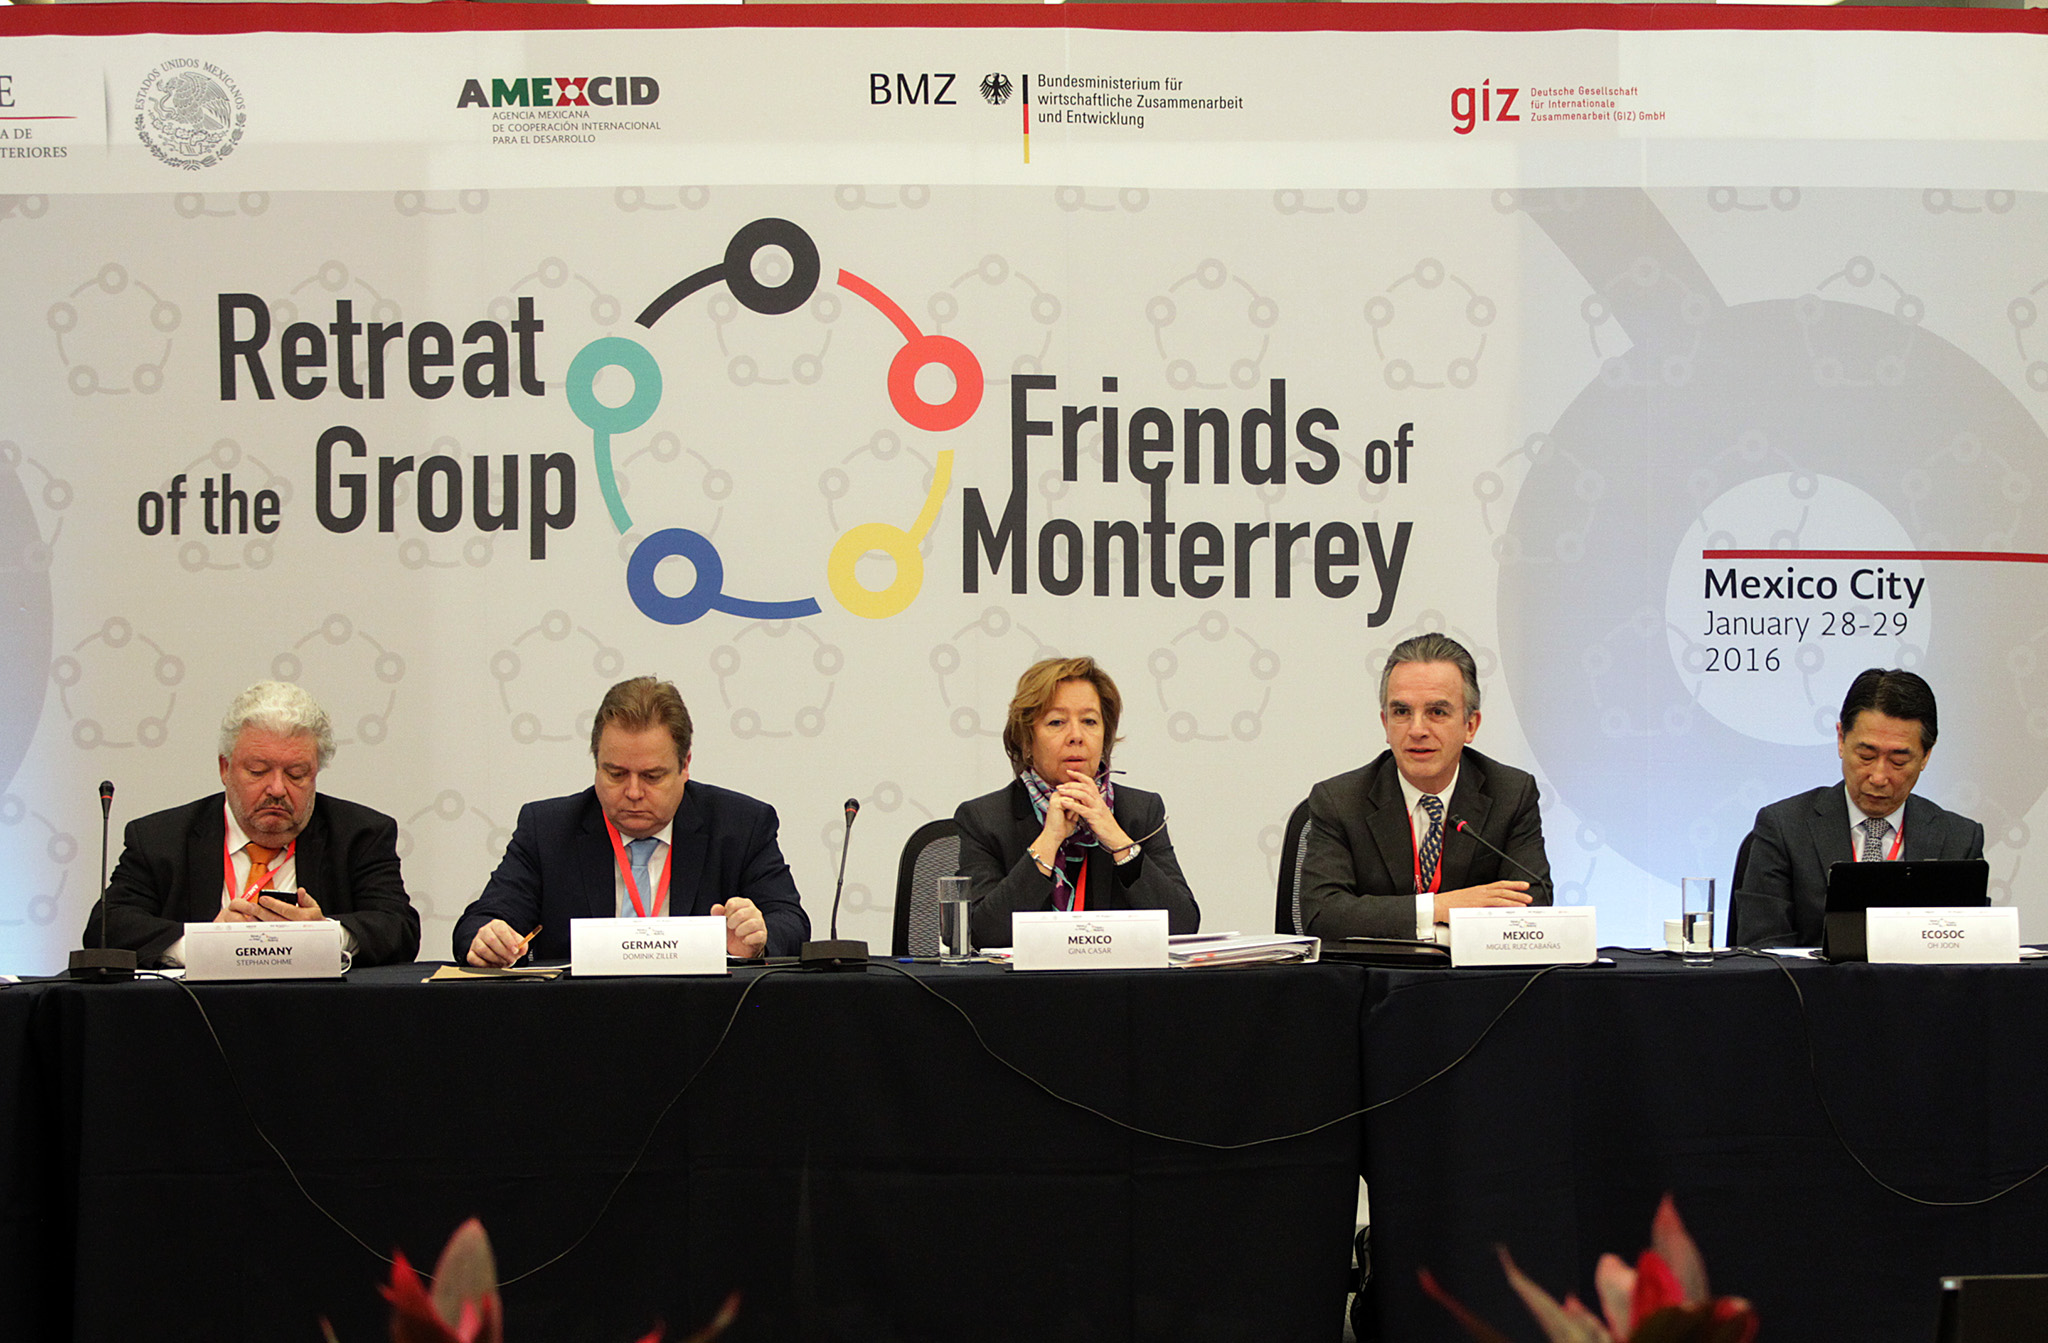 FOTO 1 Mar a Eugenia Casar P rez  Directora de la AMEXCID  y el Embajador Miguel Ruiz Caba as  en la reuni n Amigos de Monterreyjpg